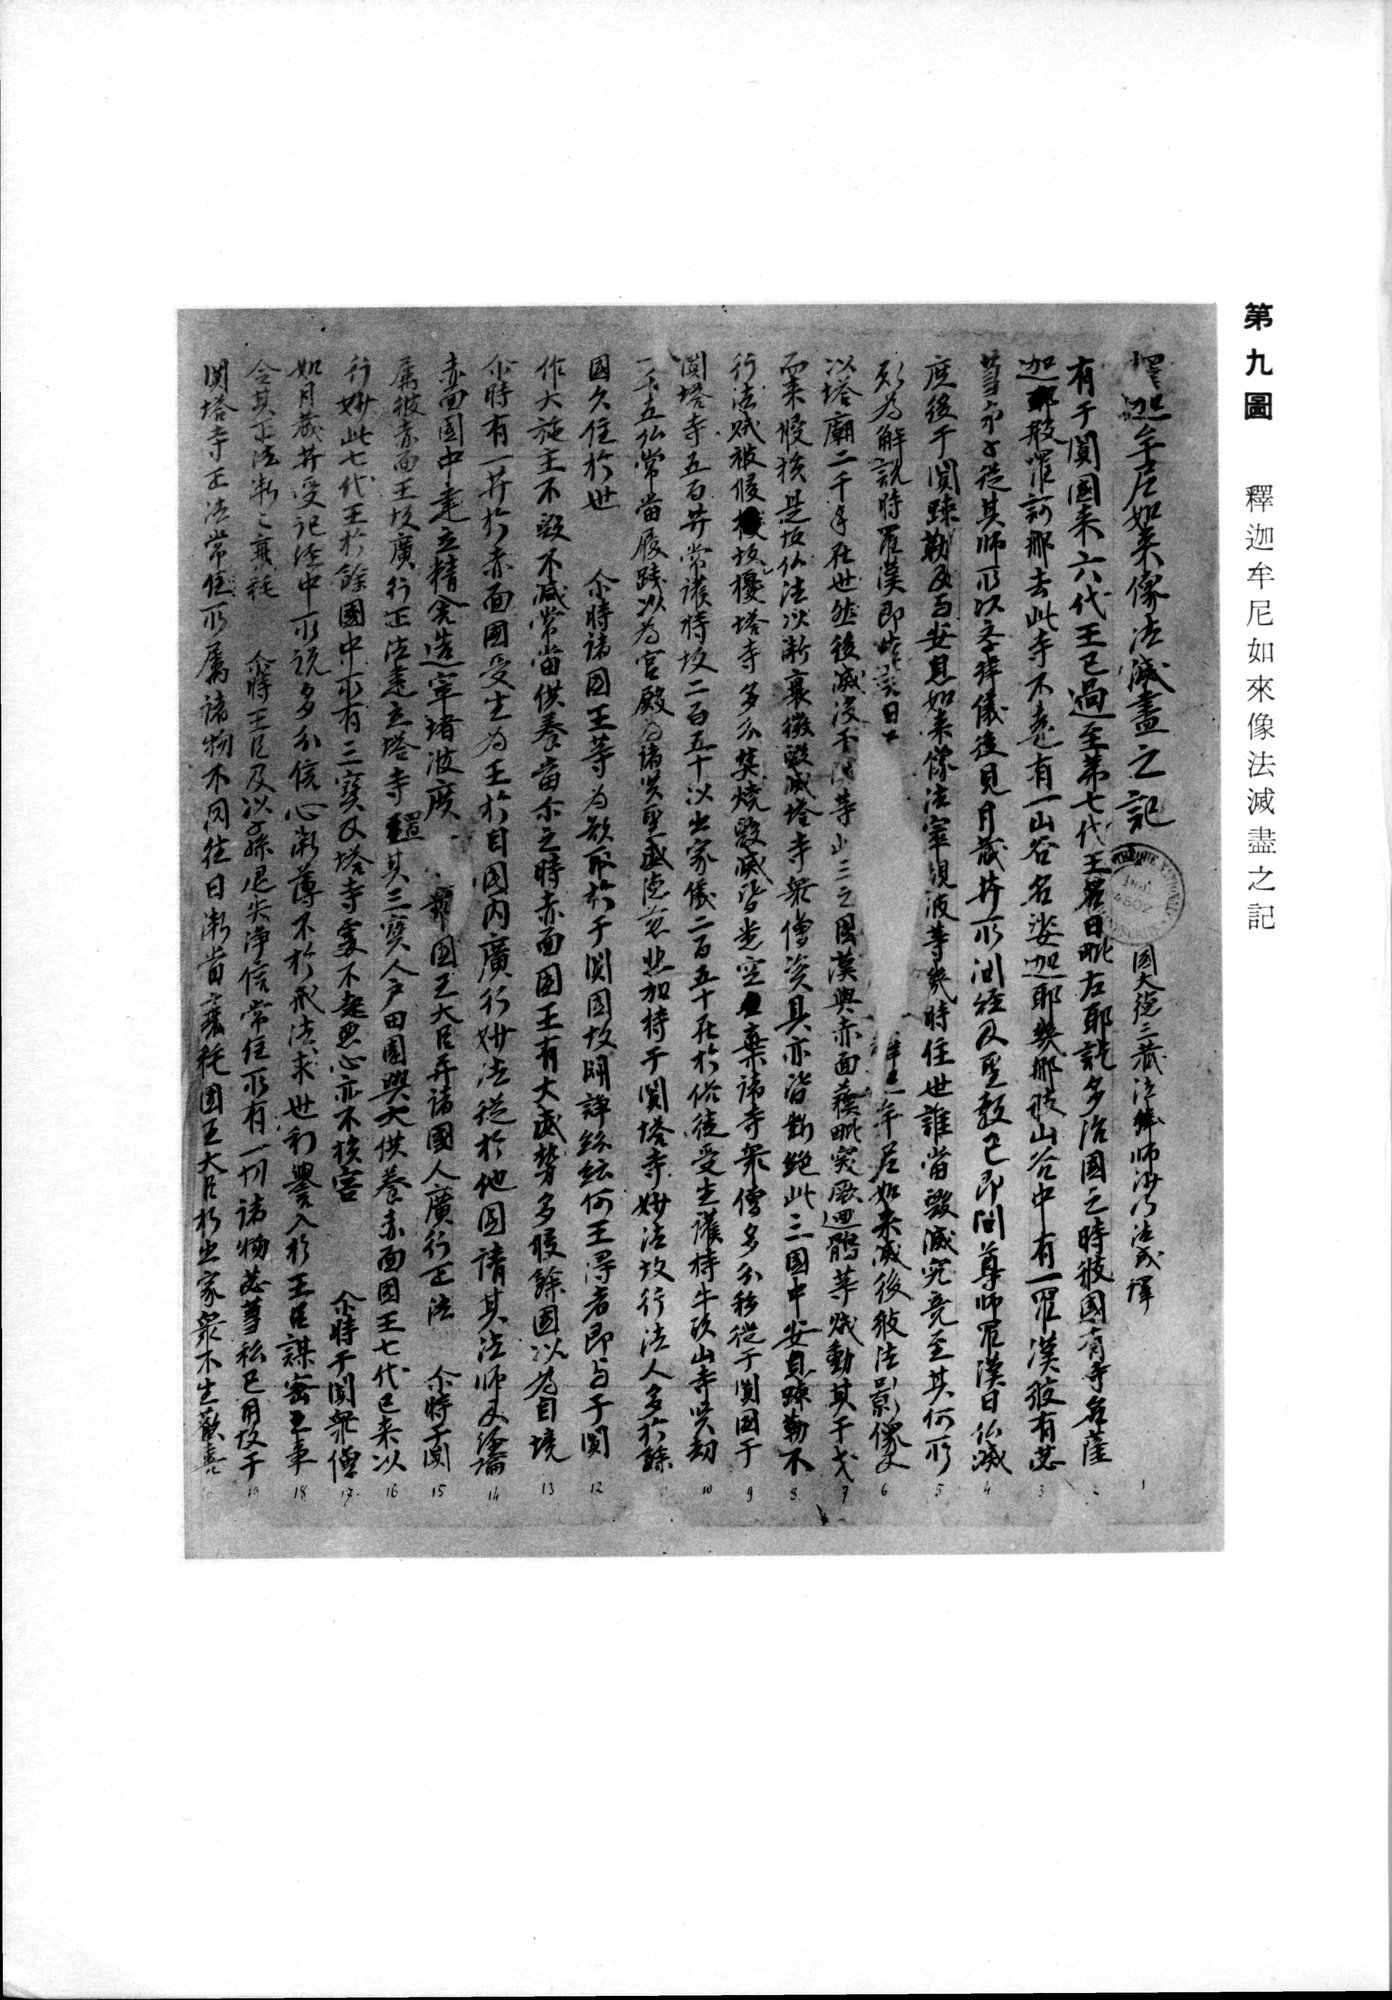 羽田博士史学論文集 : vol.2 / 23 ページ（白黒高解像度画像）